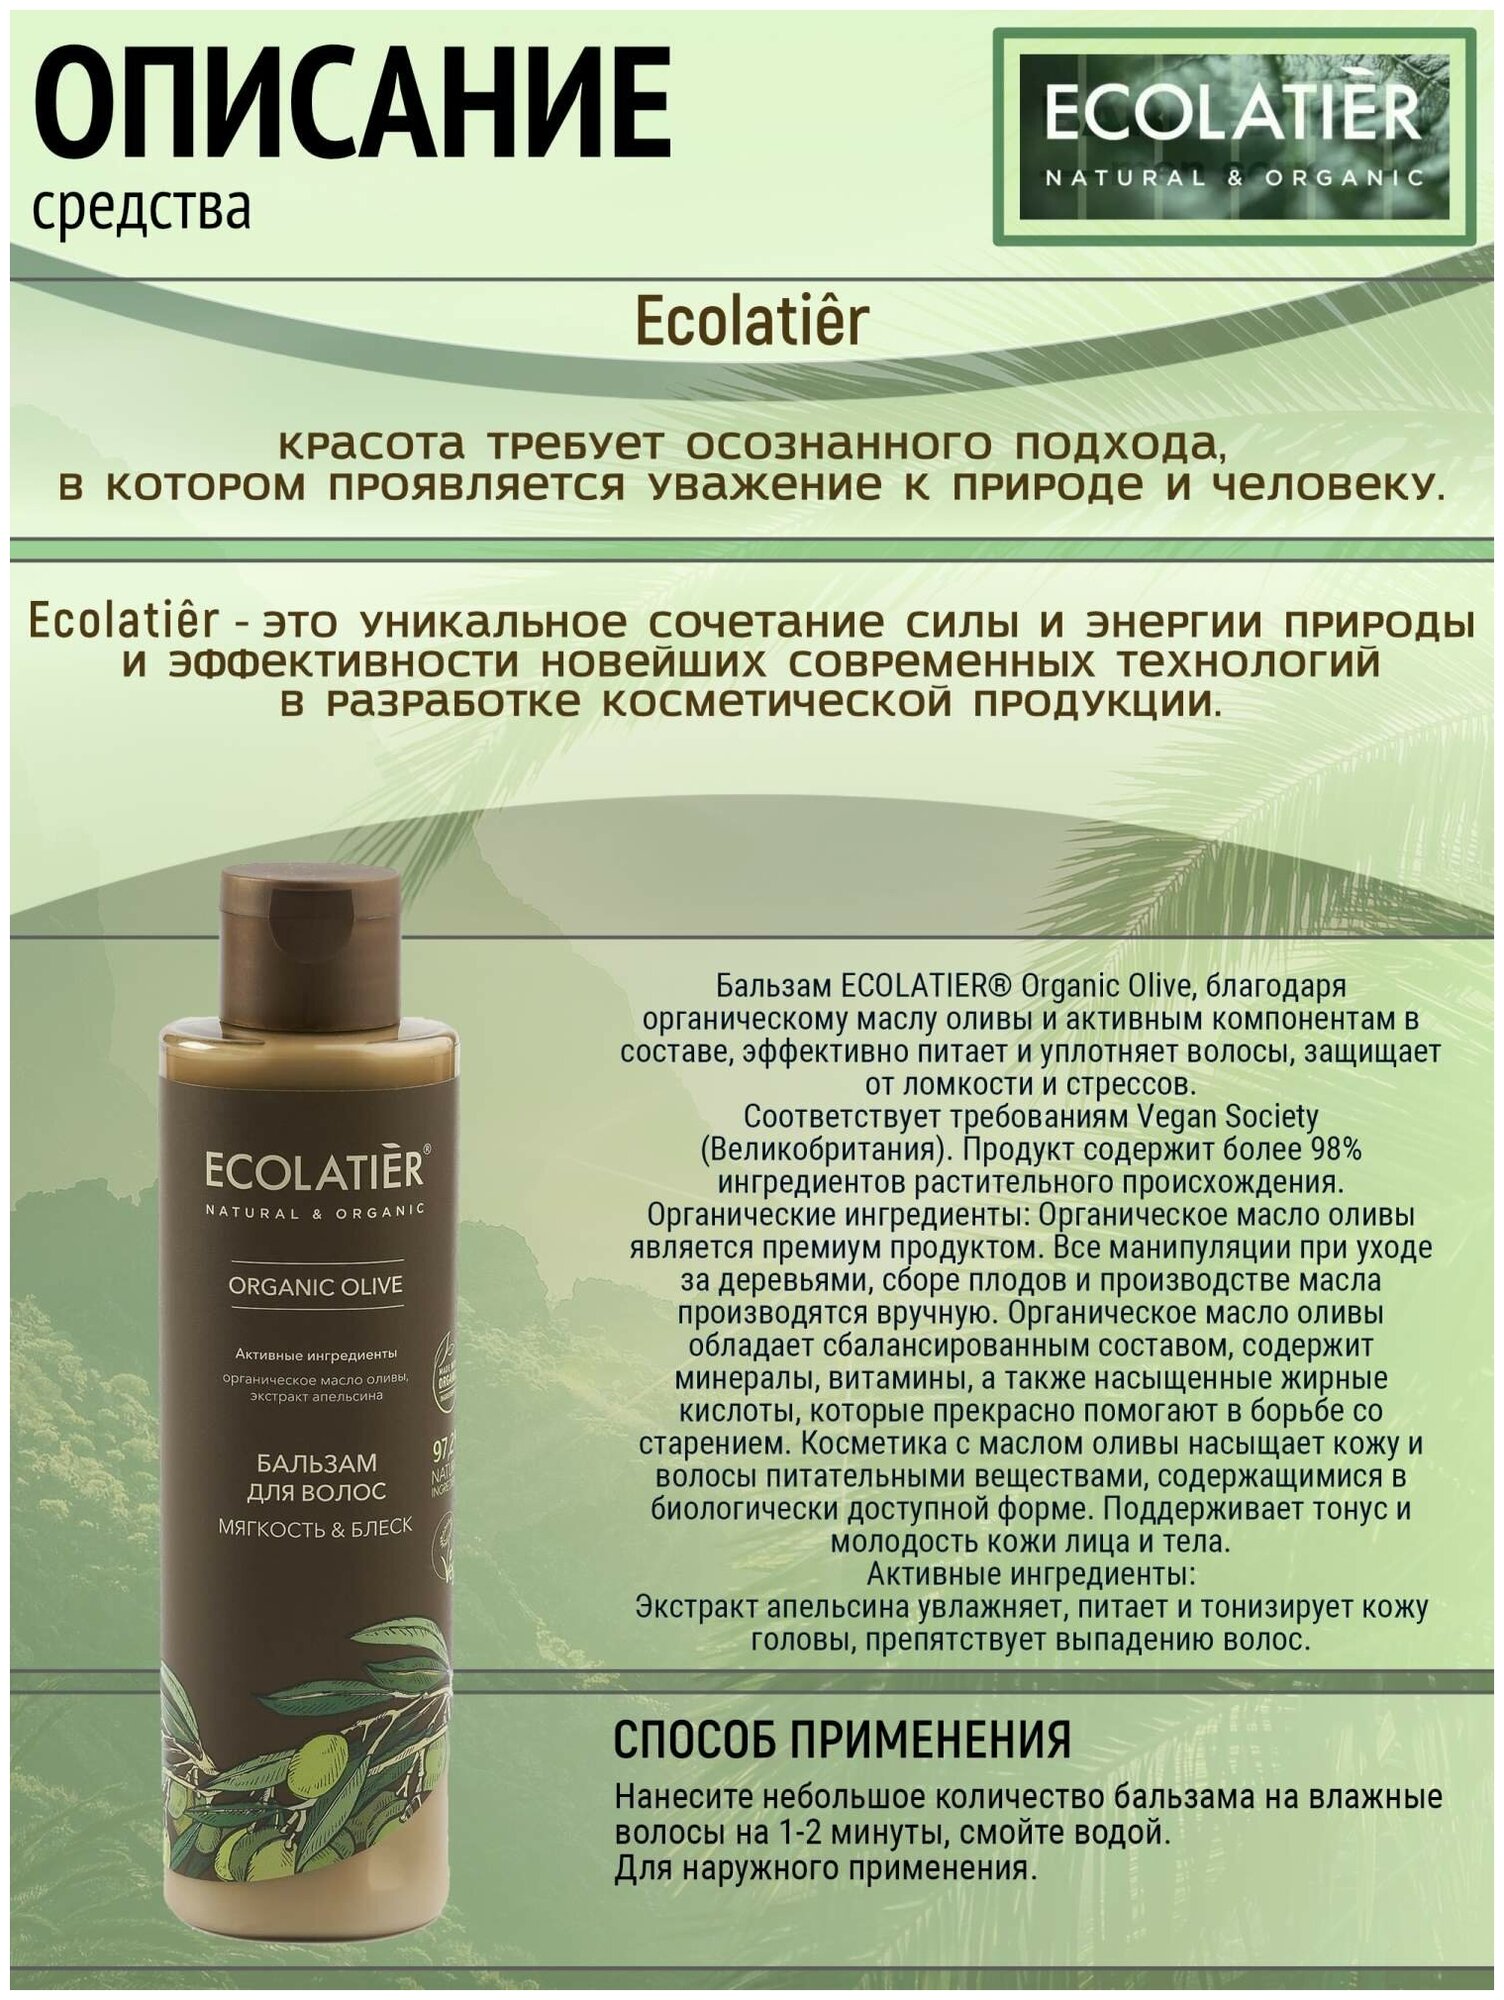 Ecolatier/GREEN Бальзам для волос Мягкость & Блеск Серия ORGANIC OLIVE, 250 мл